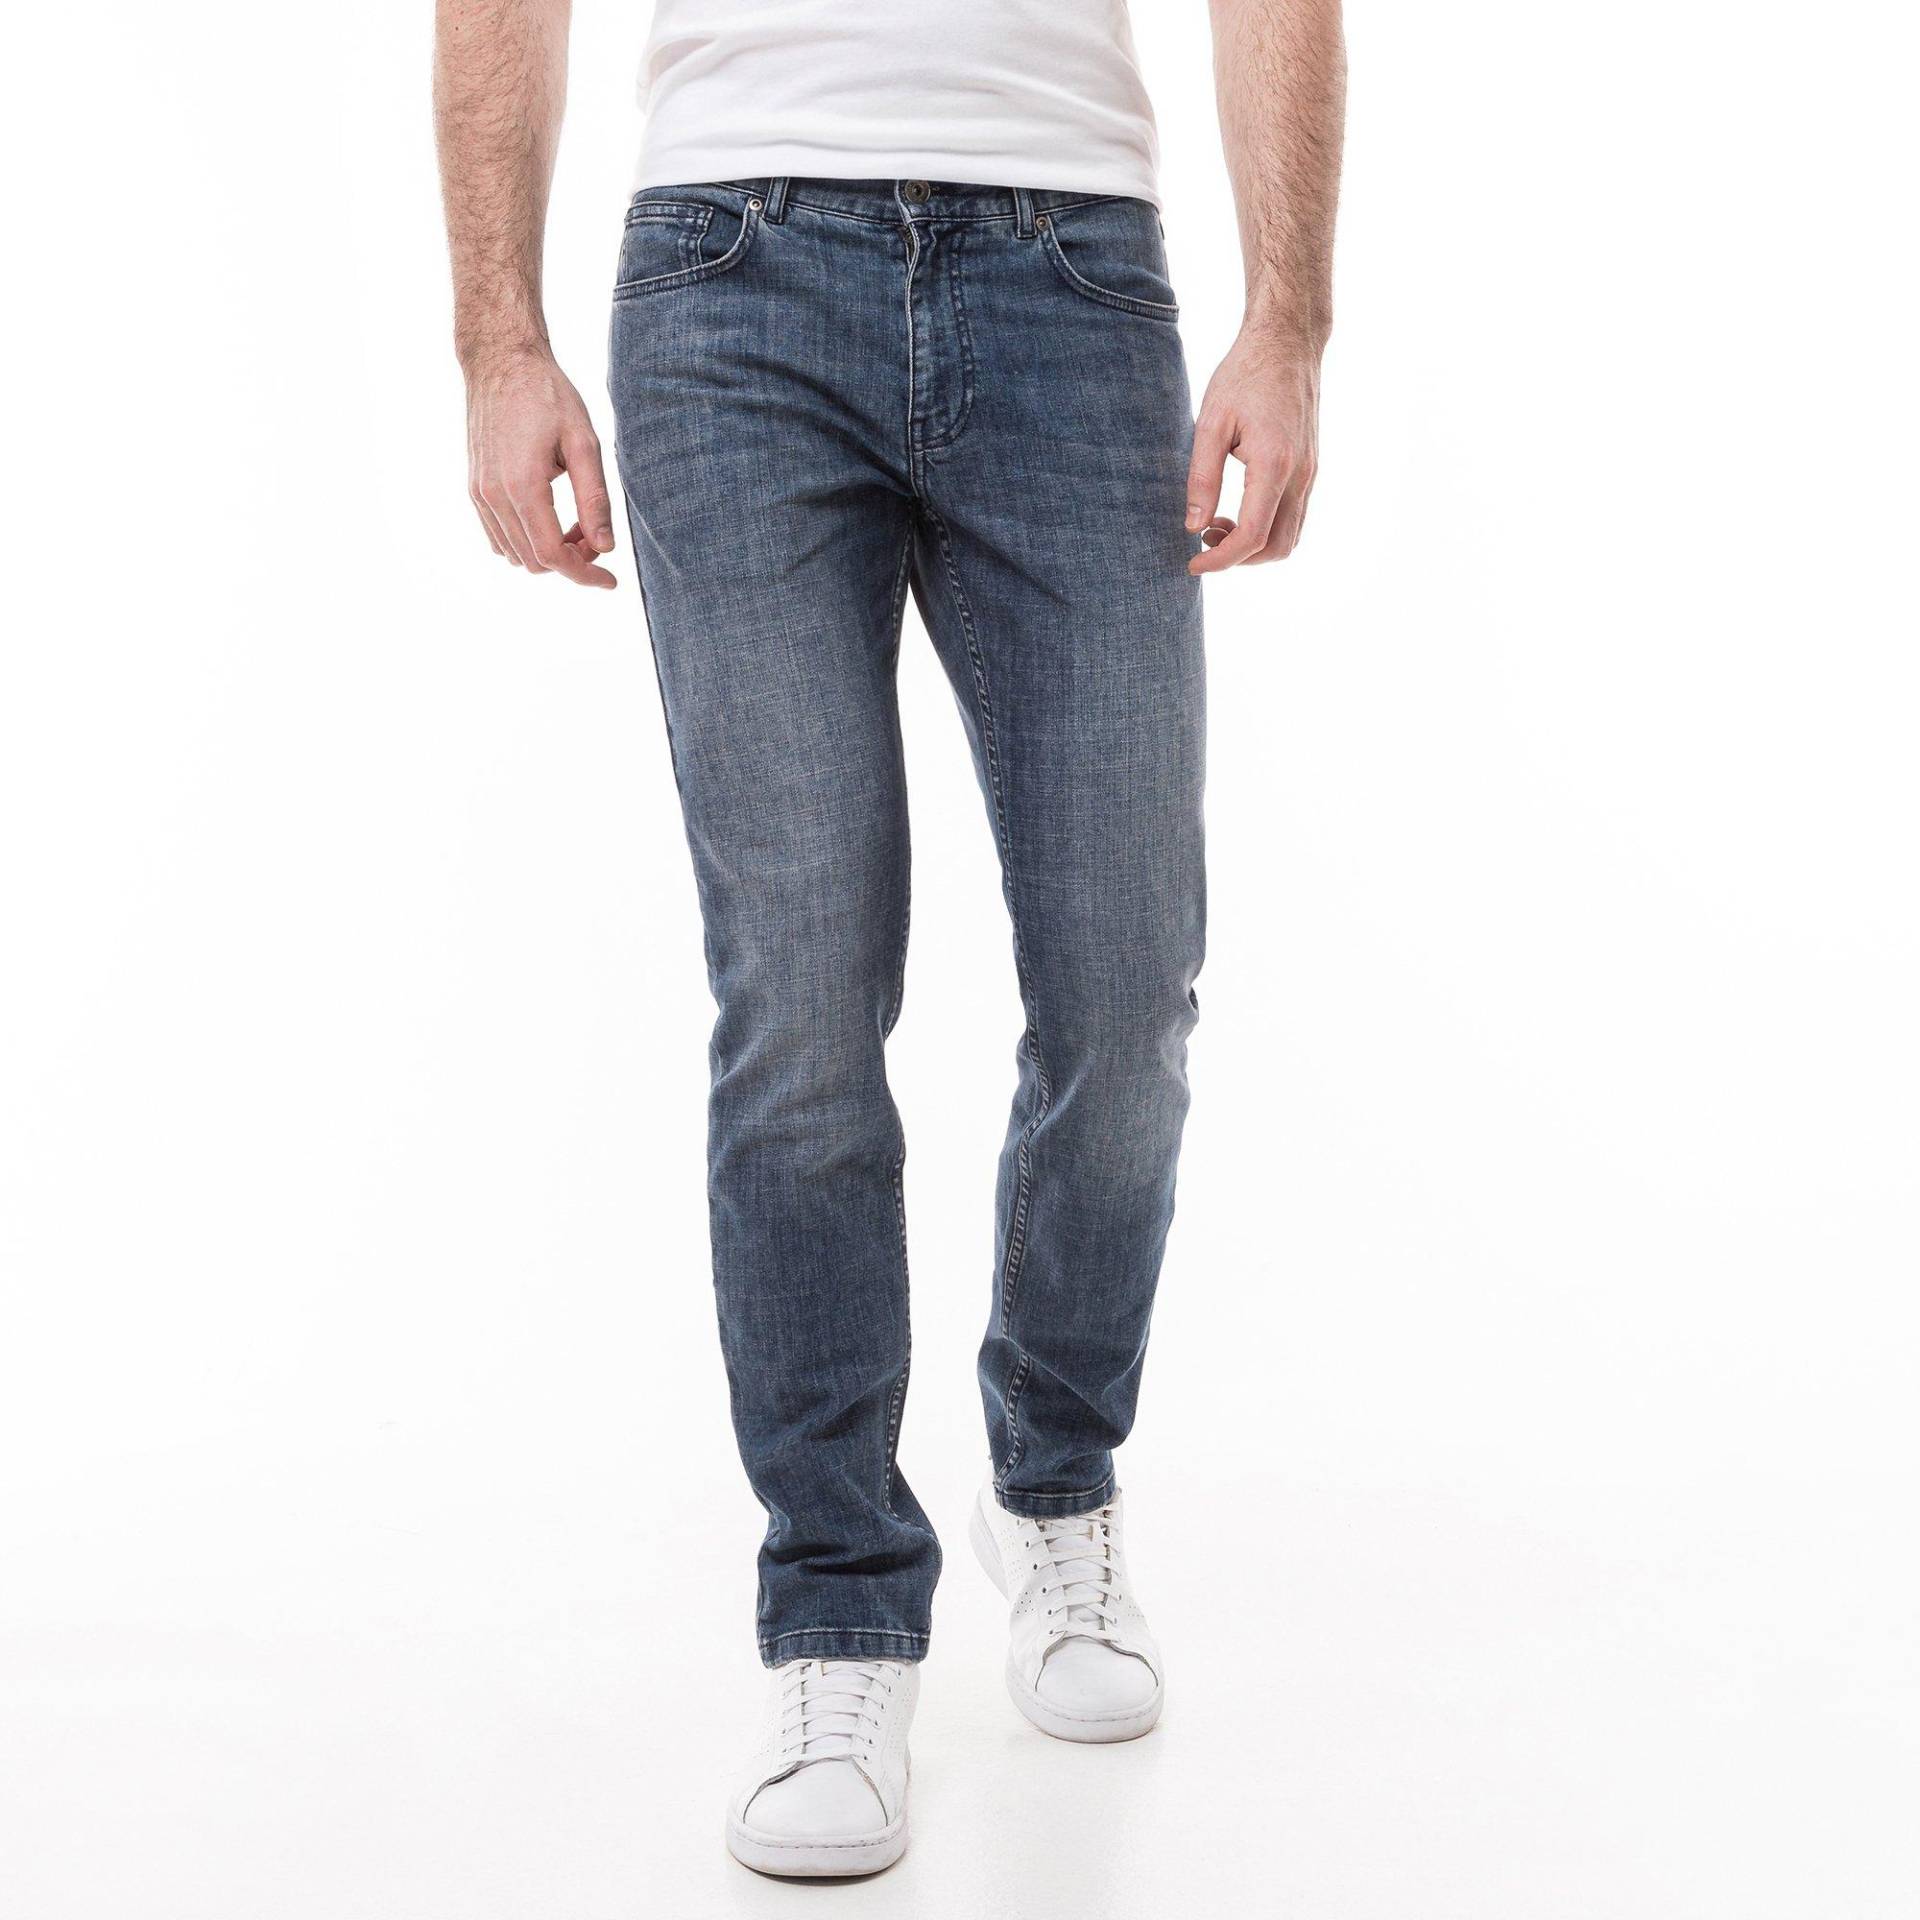 Jeans, Slim Fit Herren Blau Denim L34/W32 von Manor Man